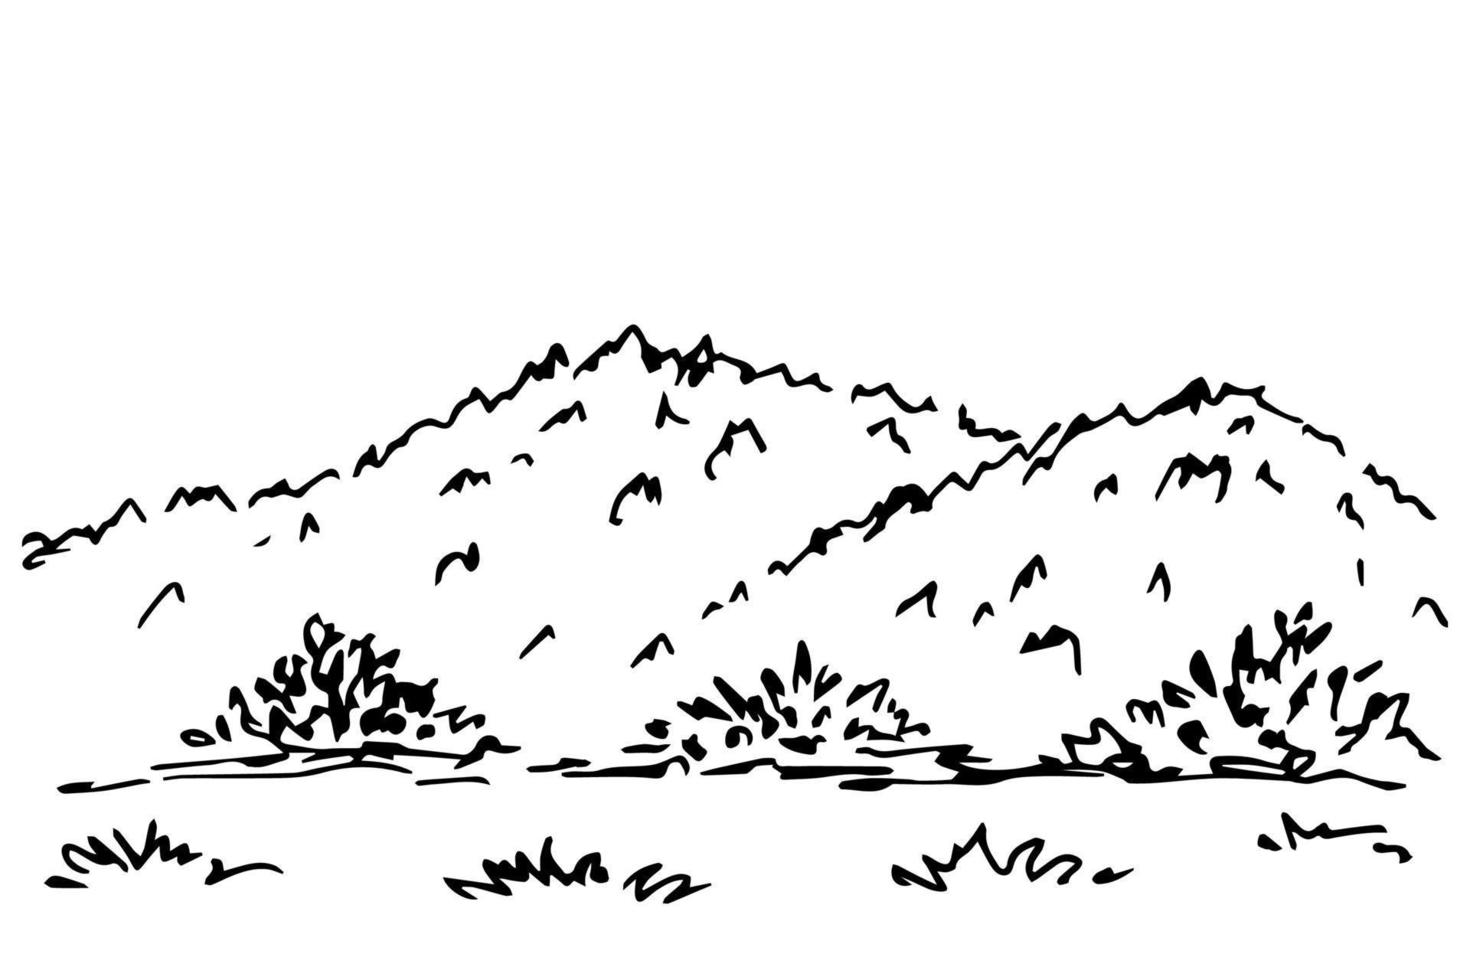 dessin à main levée simple vecteur noir et blanc. paysage de montagne, collines, arbres, buissons, faune. nature, végétation, campagne.